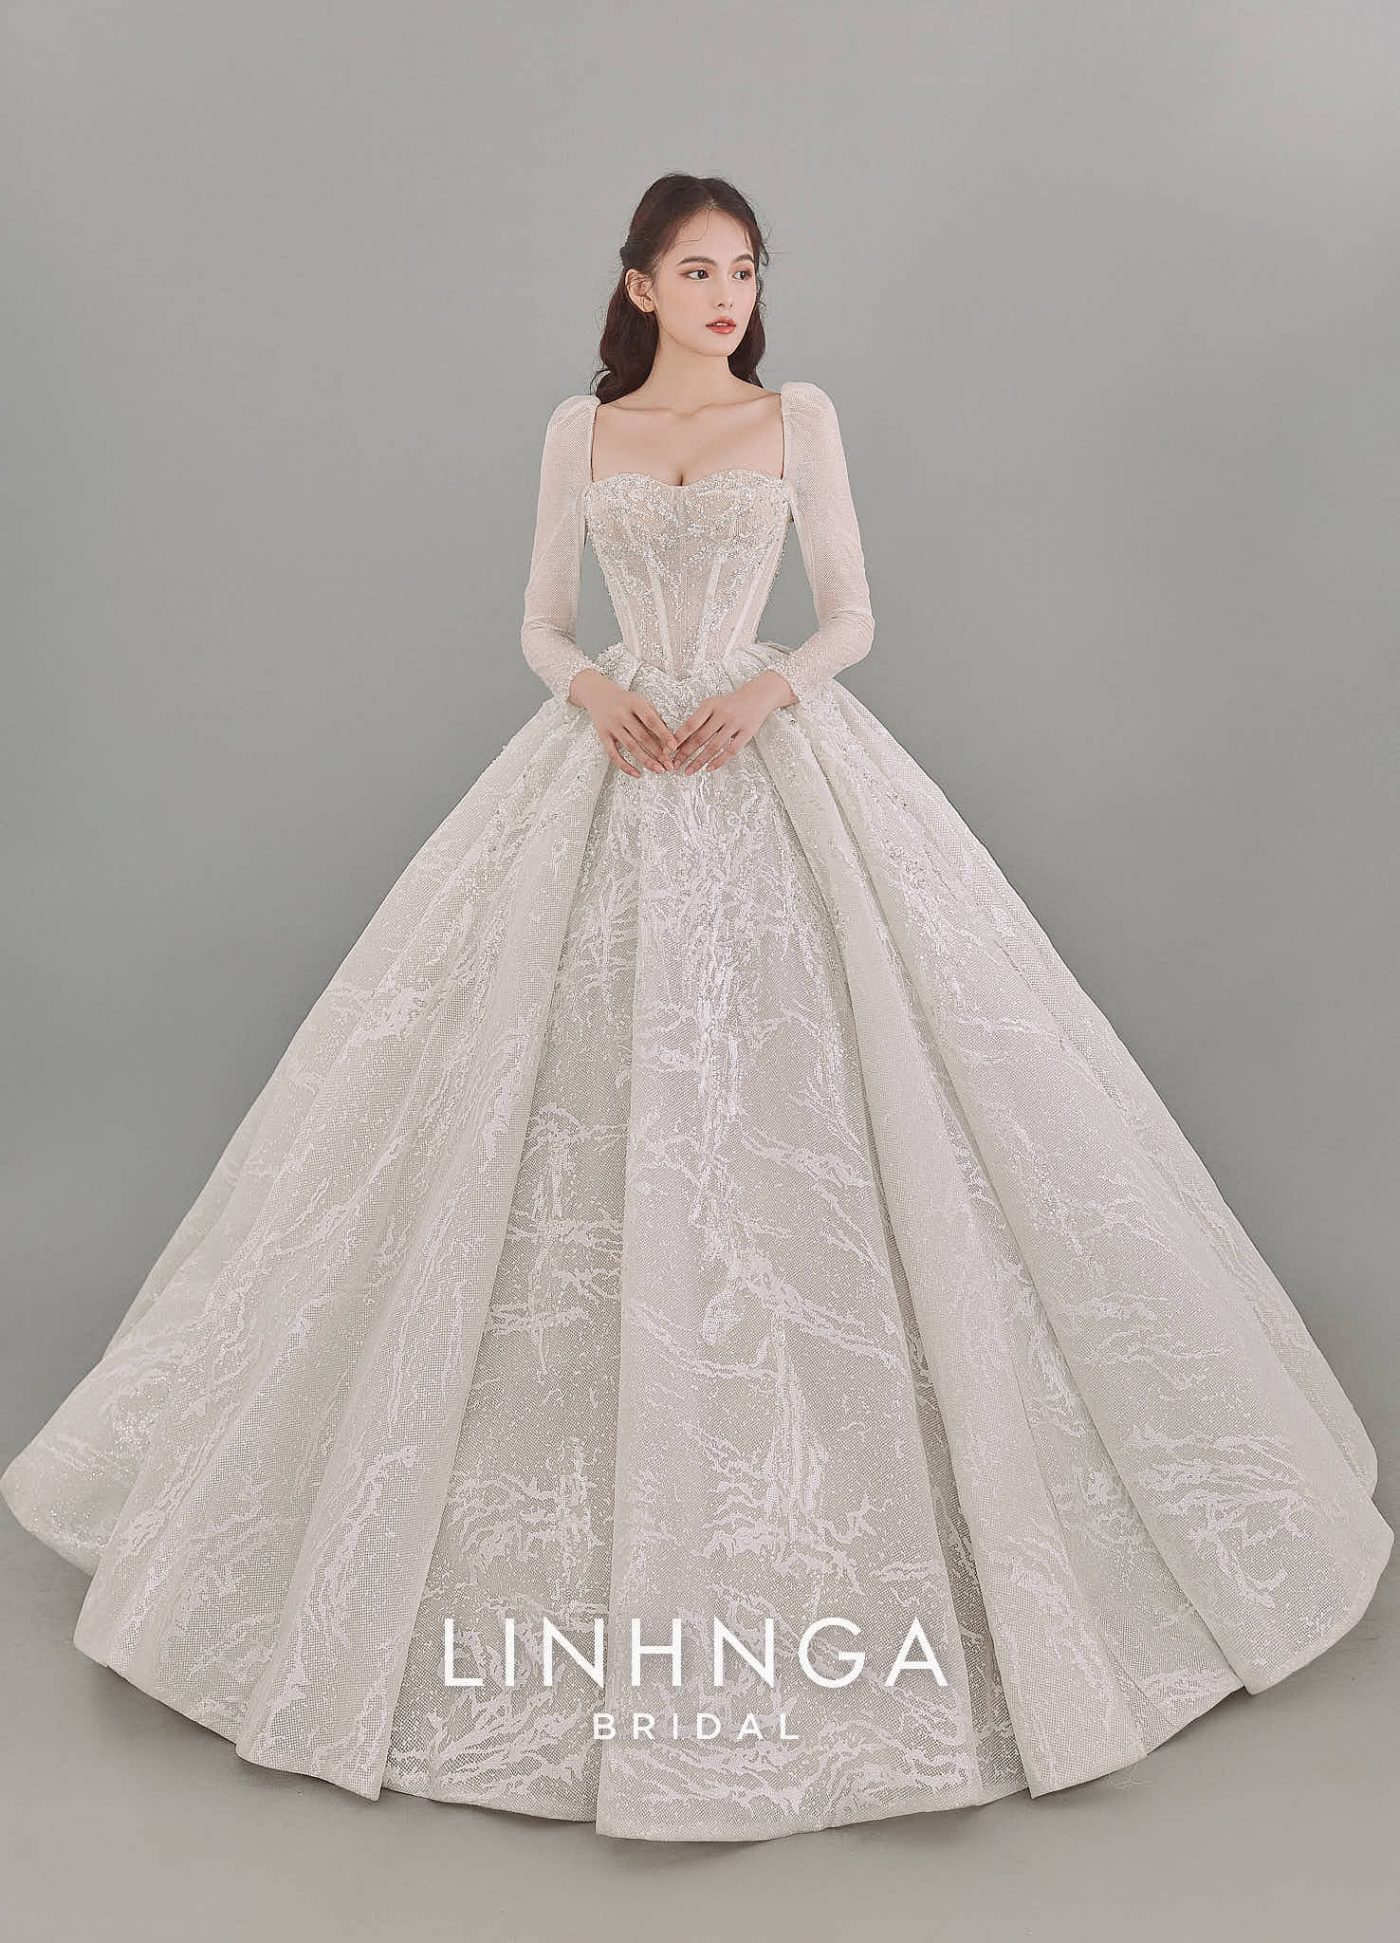 Váy lễ dòng limitedLM075  VÁY CƯỚI CAO CẤP LINH NGA BRIDAL